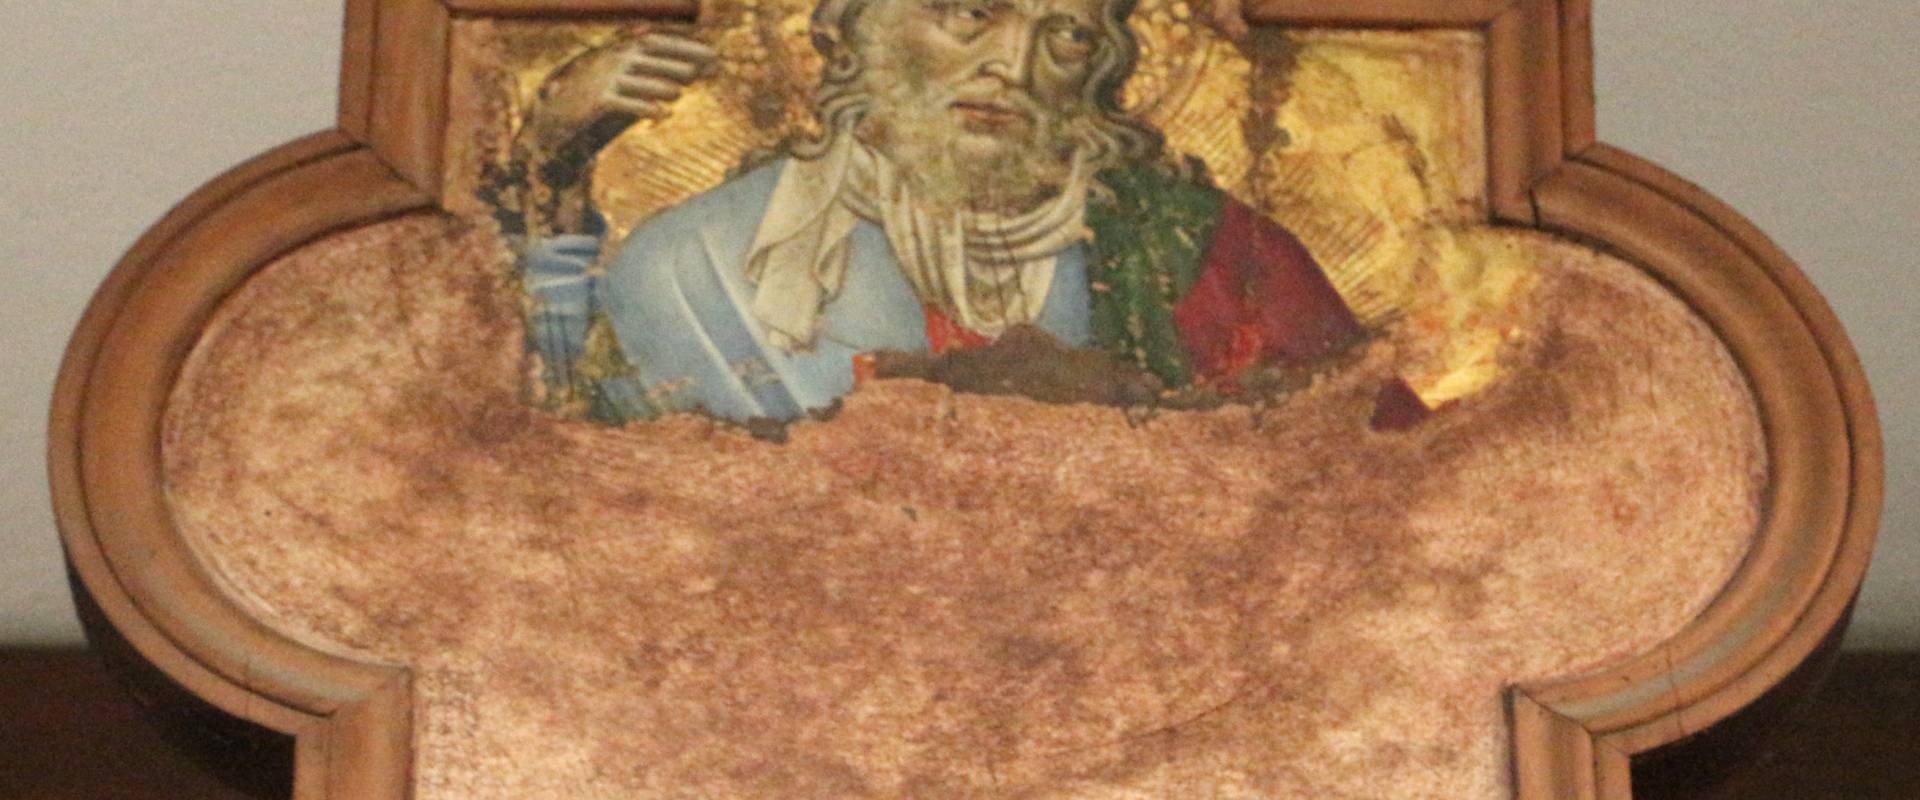 Michele di matteo, crocifisso, 1435-45 ca. 02 photo by Sailko